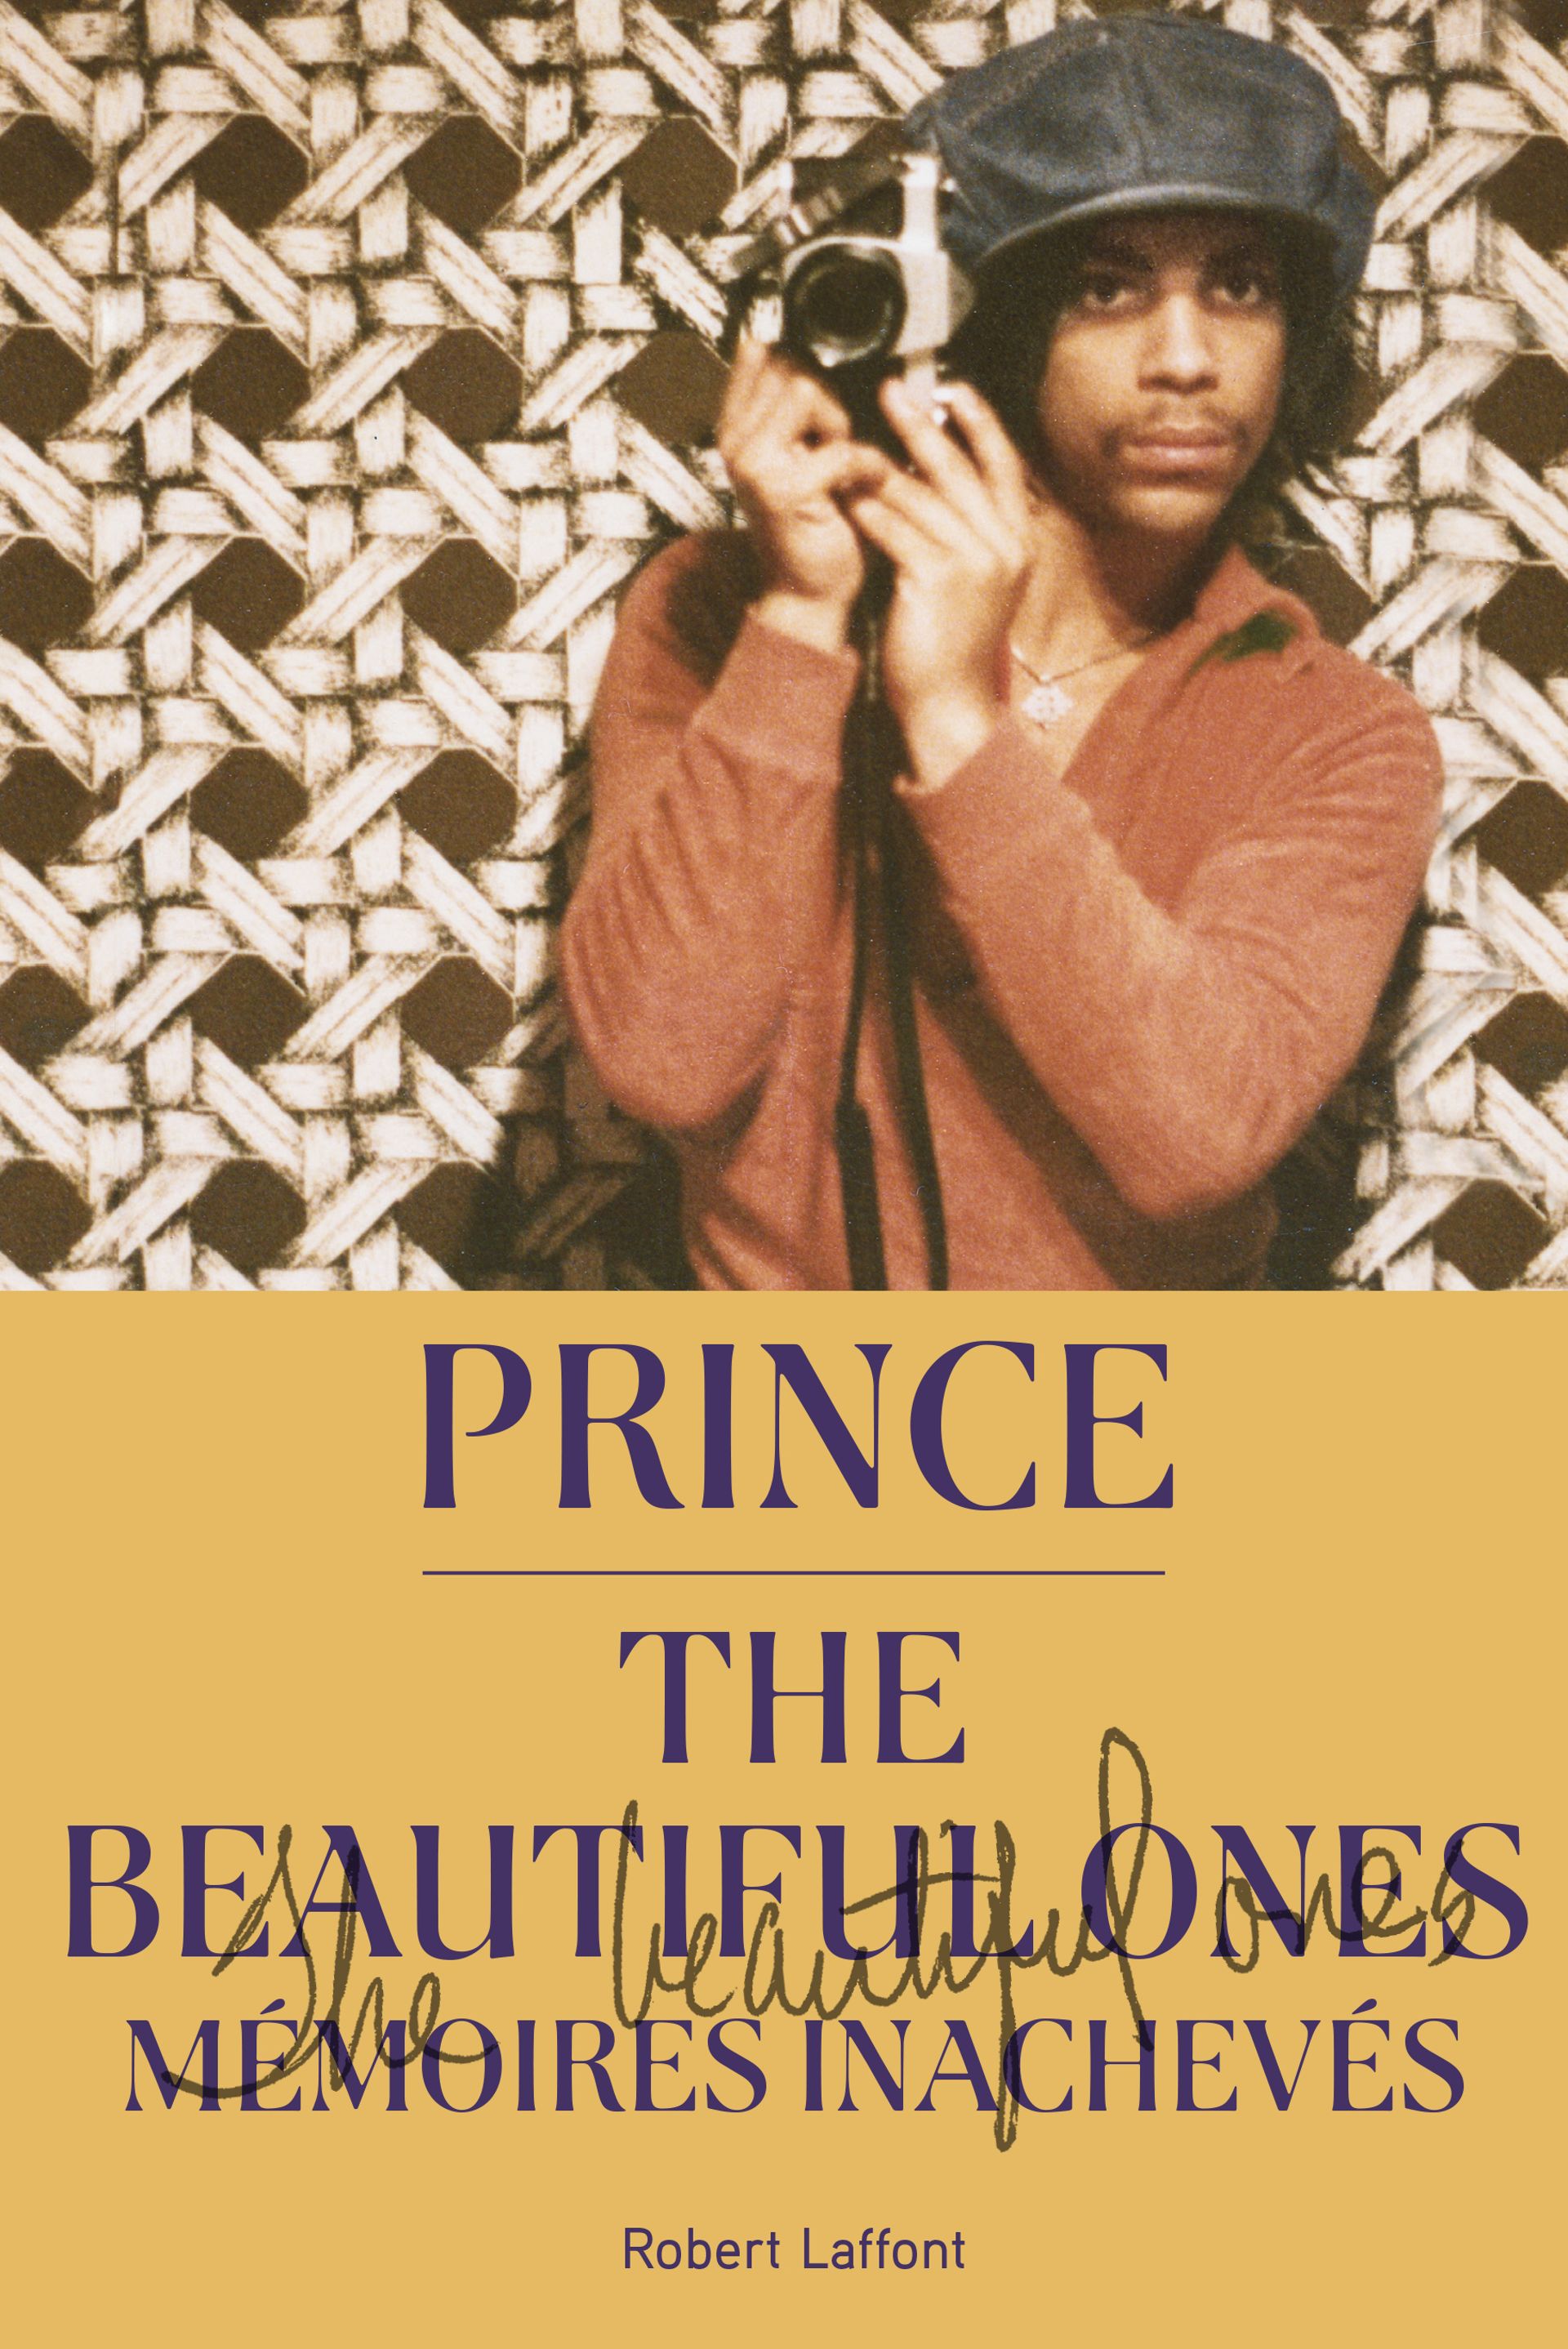 Prince, The Beautiful Ones, mémoires inachevées, en collaboration avec Dan Piepenbring